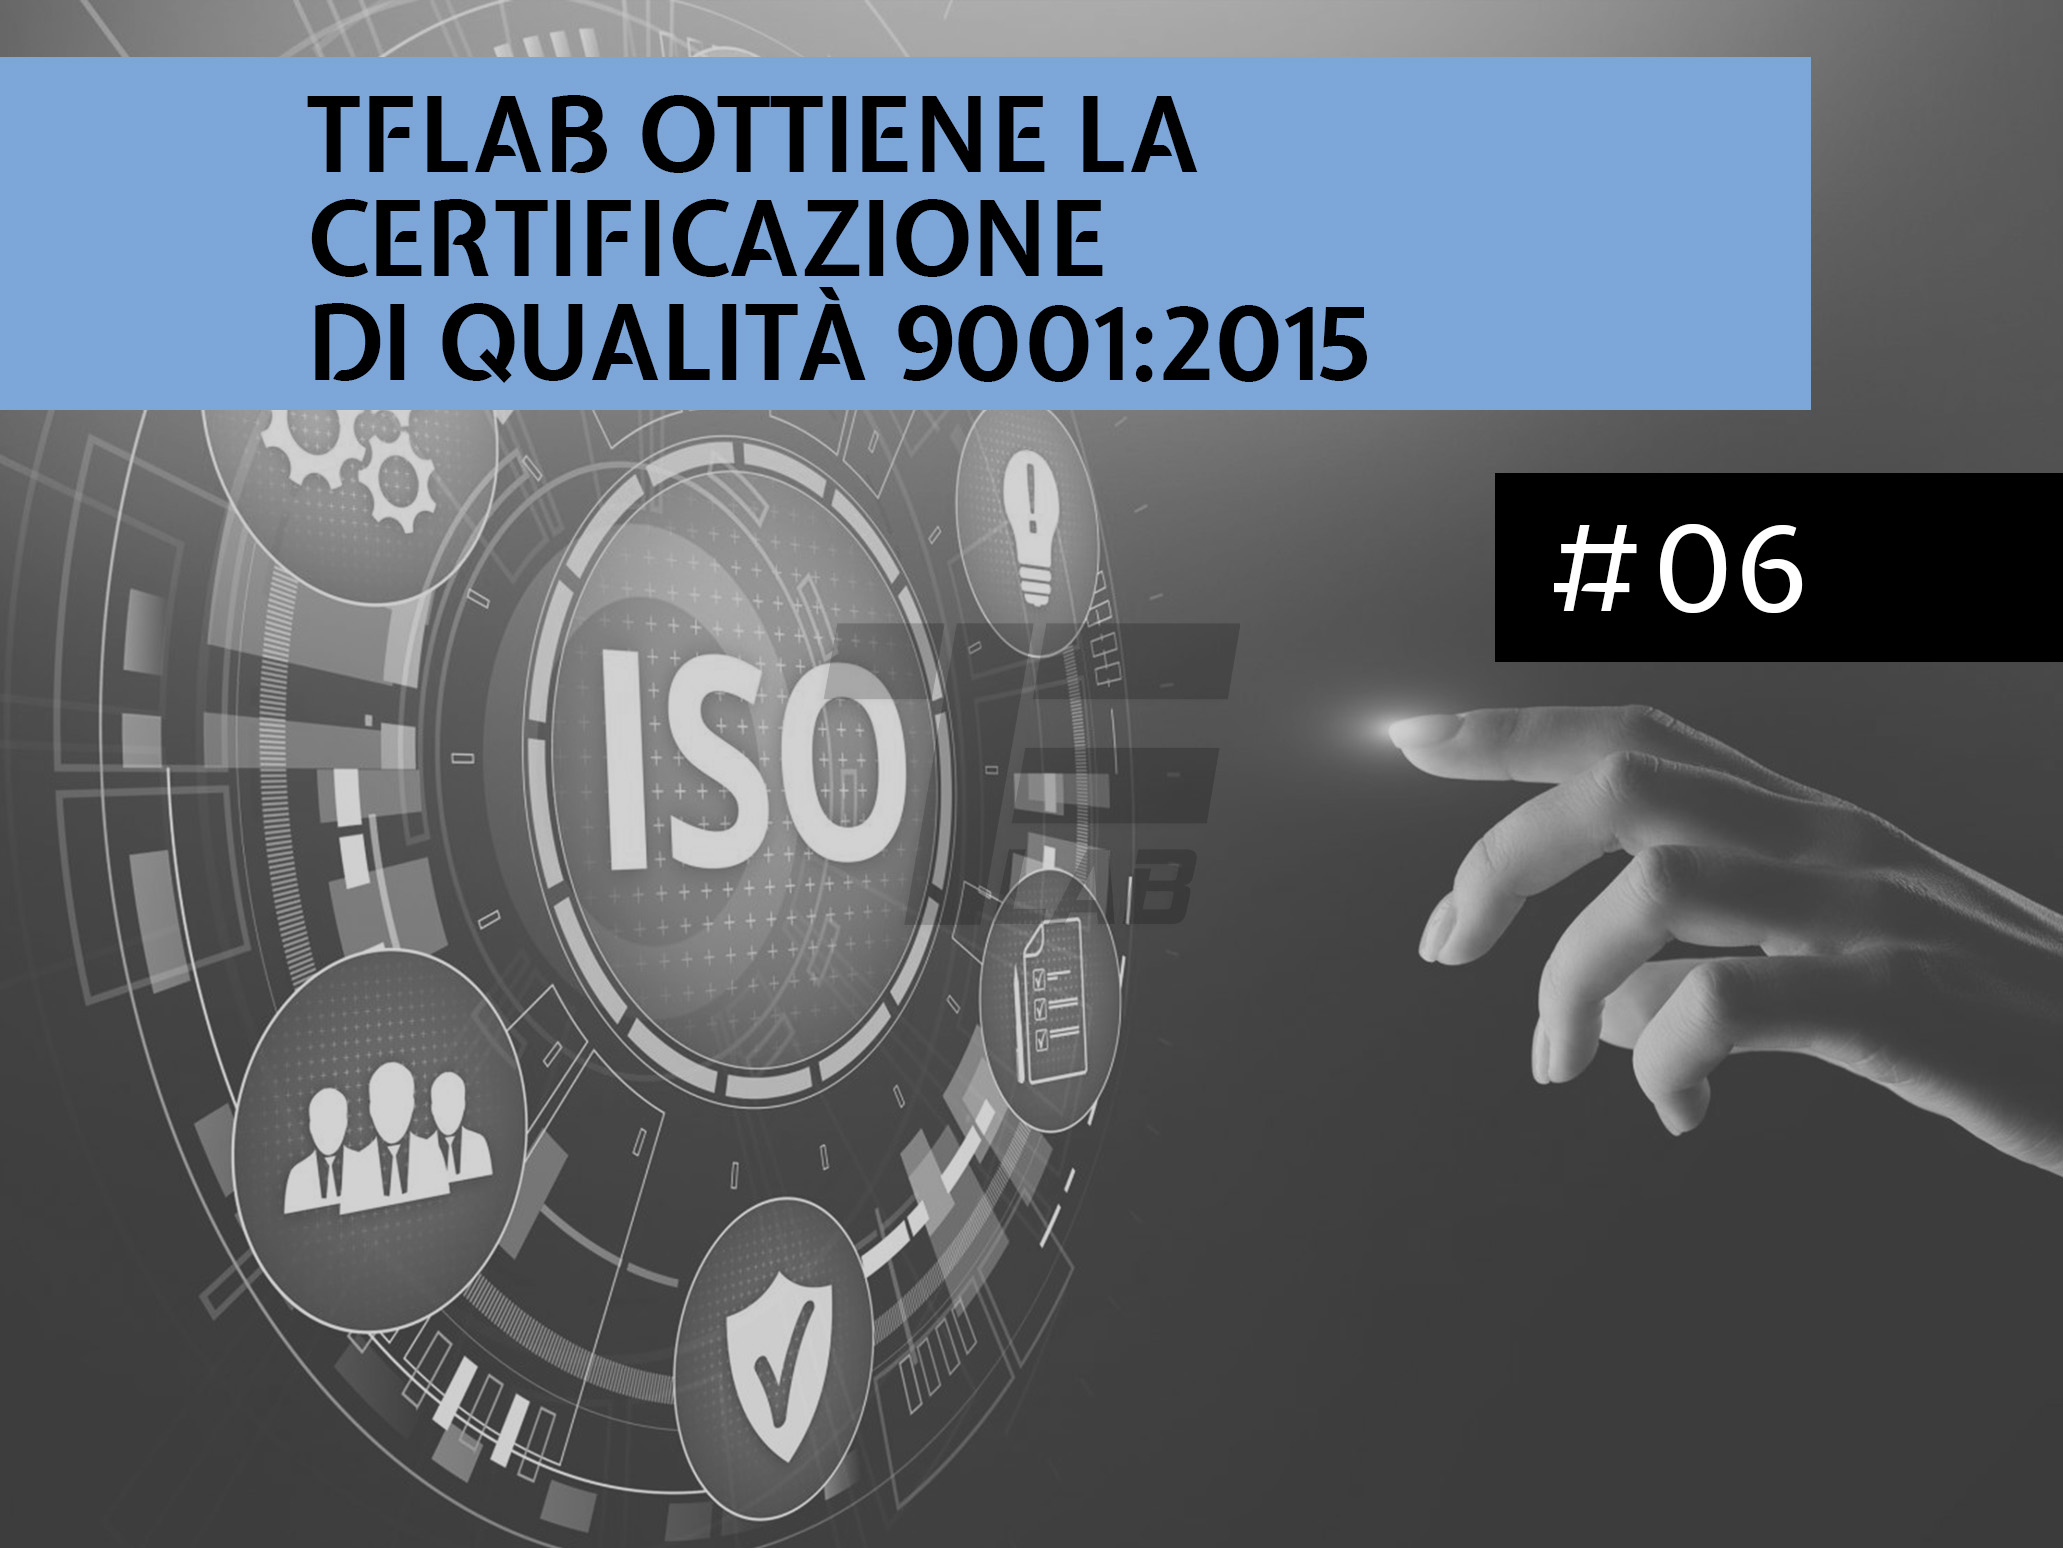 TFLab ottiene la certificazione di qualità 9001:2015